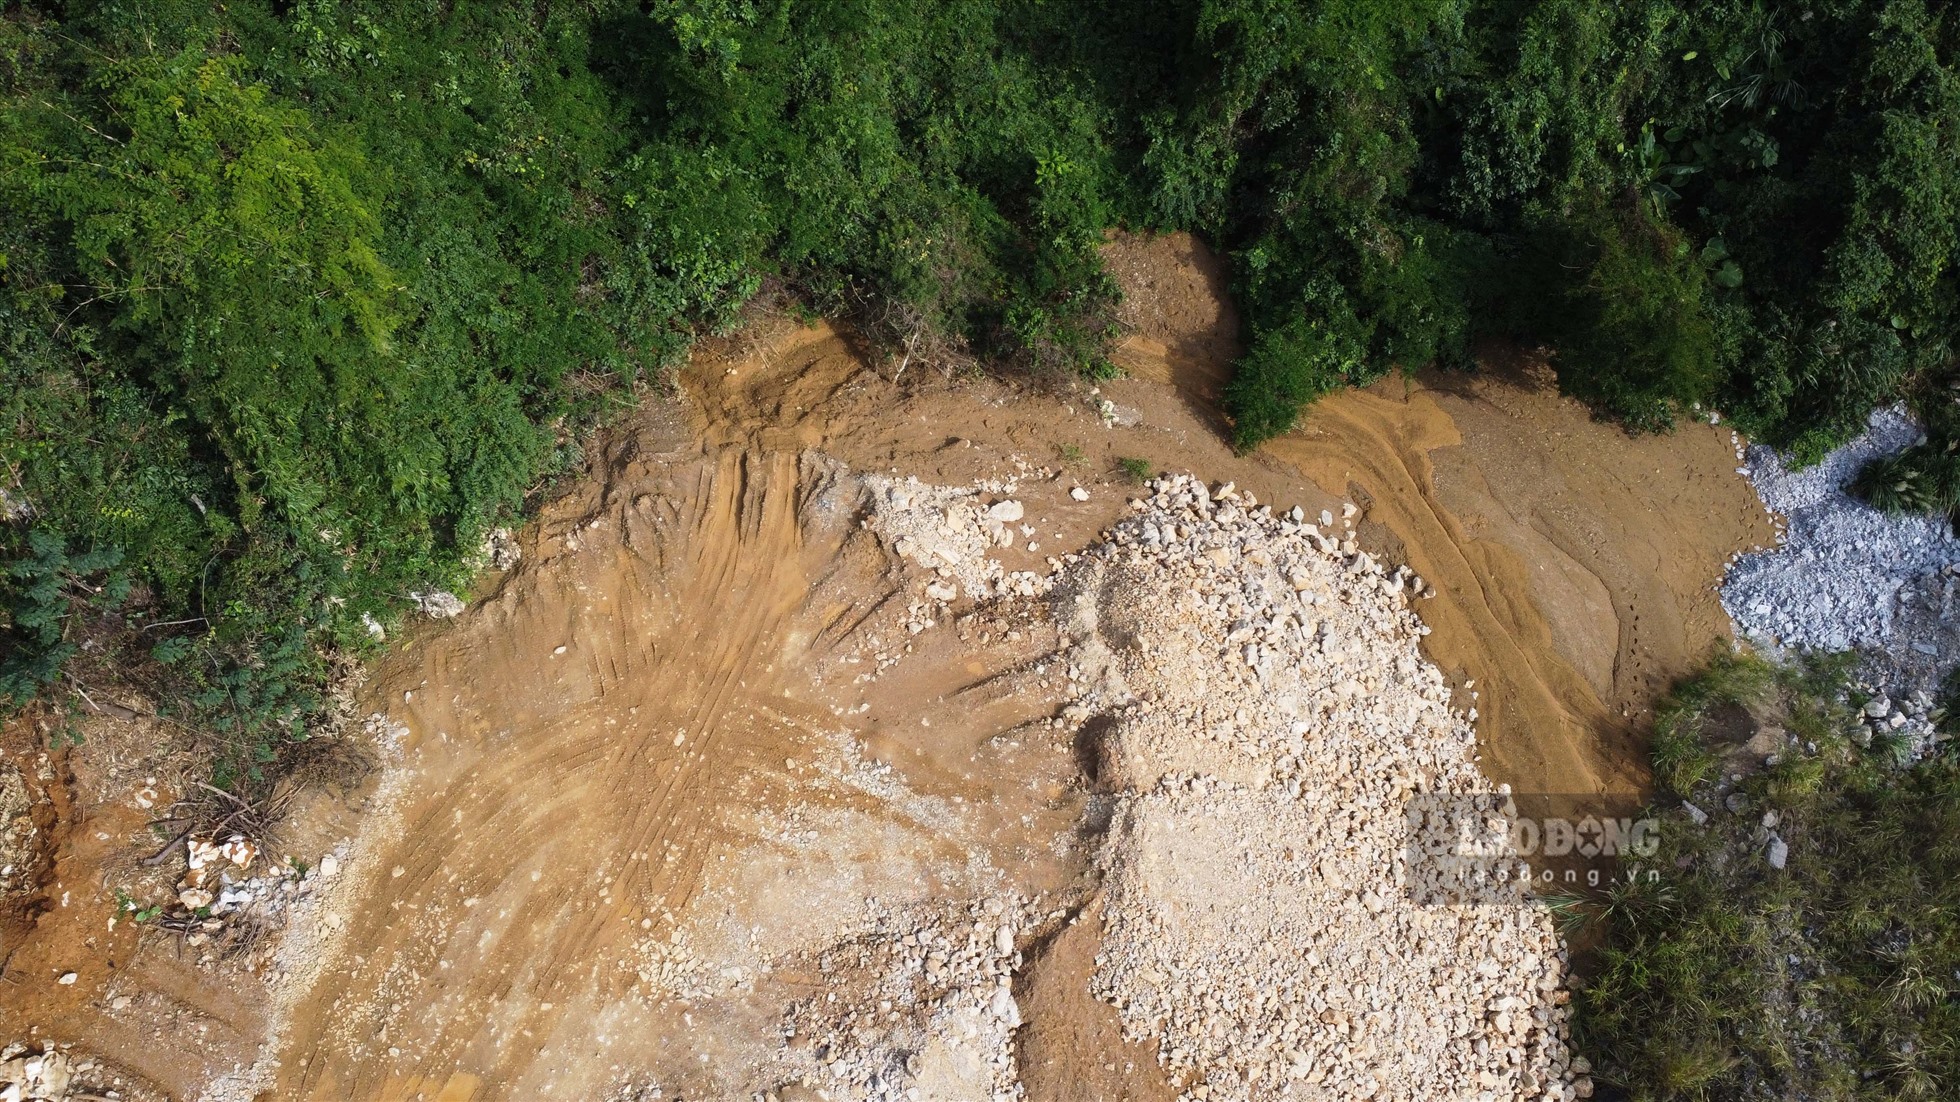 Đất đá kèm bùn đặc sệt với dấu tích rất mới được phát hiện tại các khu vực đổ thải trong mỏ của Công ty Thủ đô gió ngàn. Ảnh: Phùng Minh.